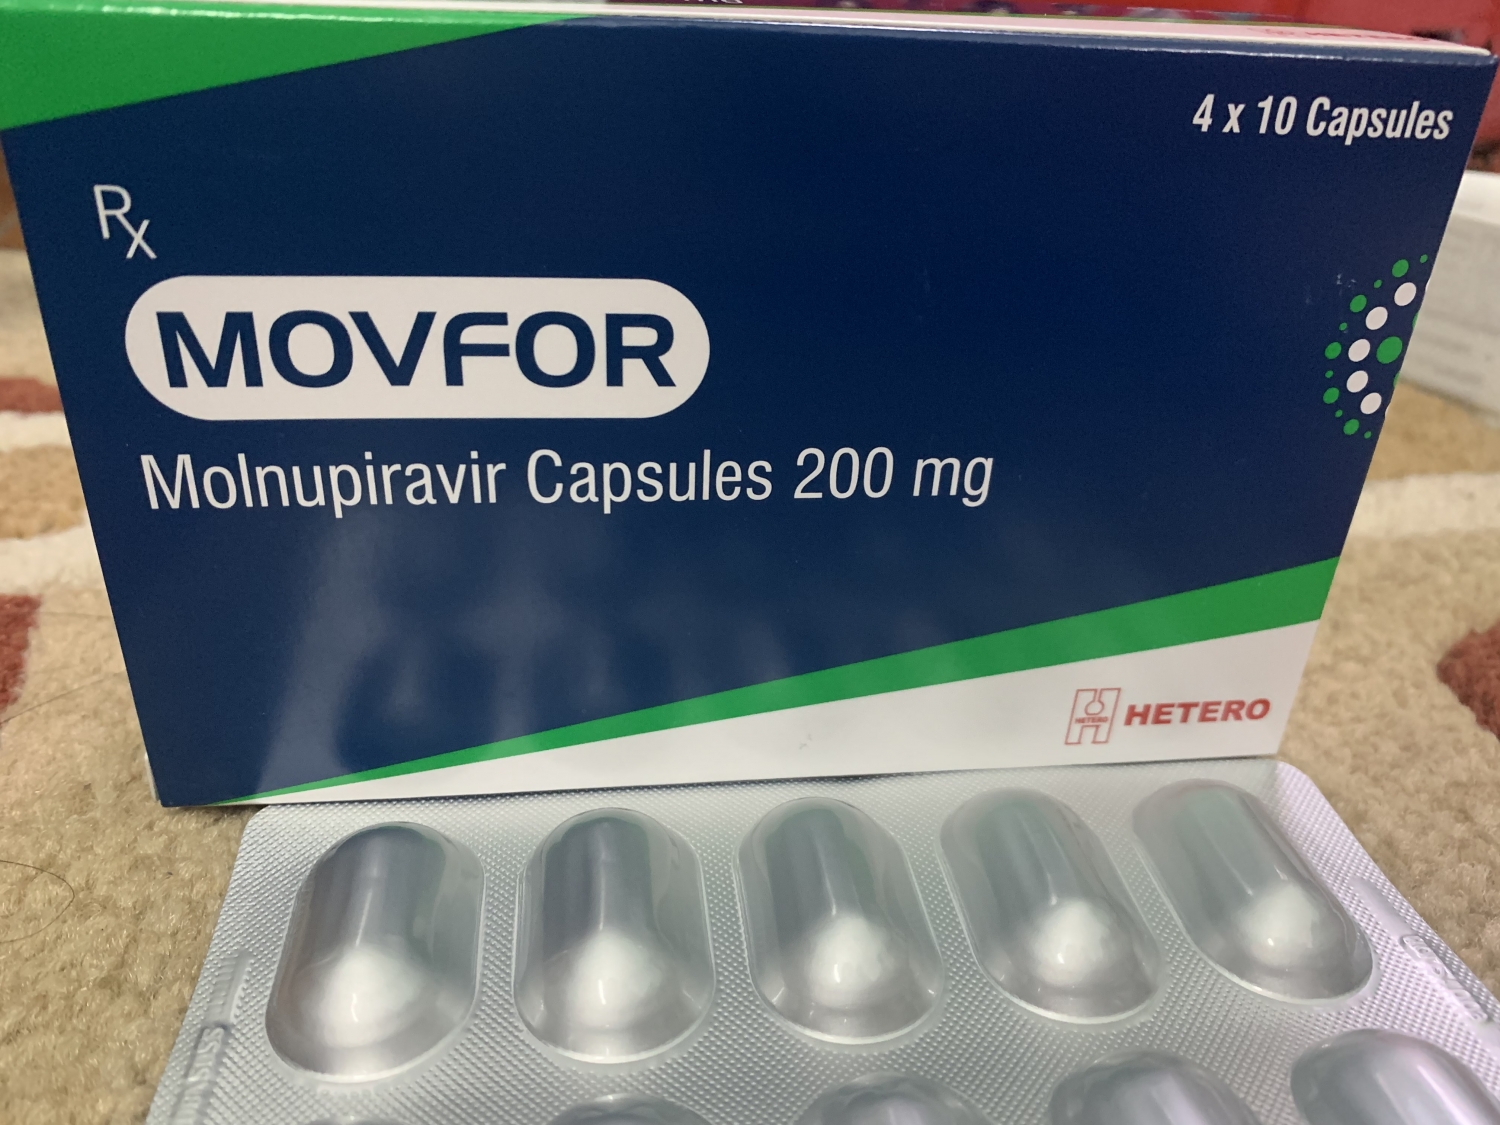 Bộ Y tế thông tin về thuốc Molnupiravir và các cảnh báo khi dùng thuốc